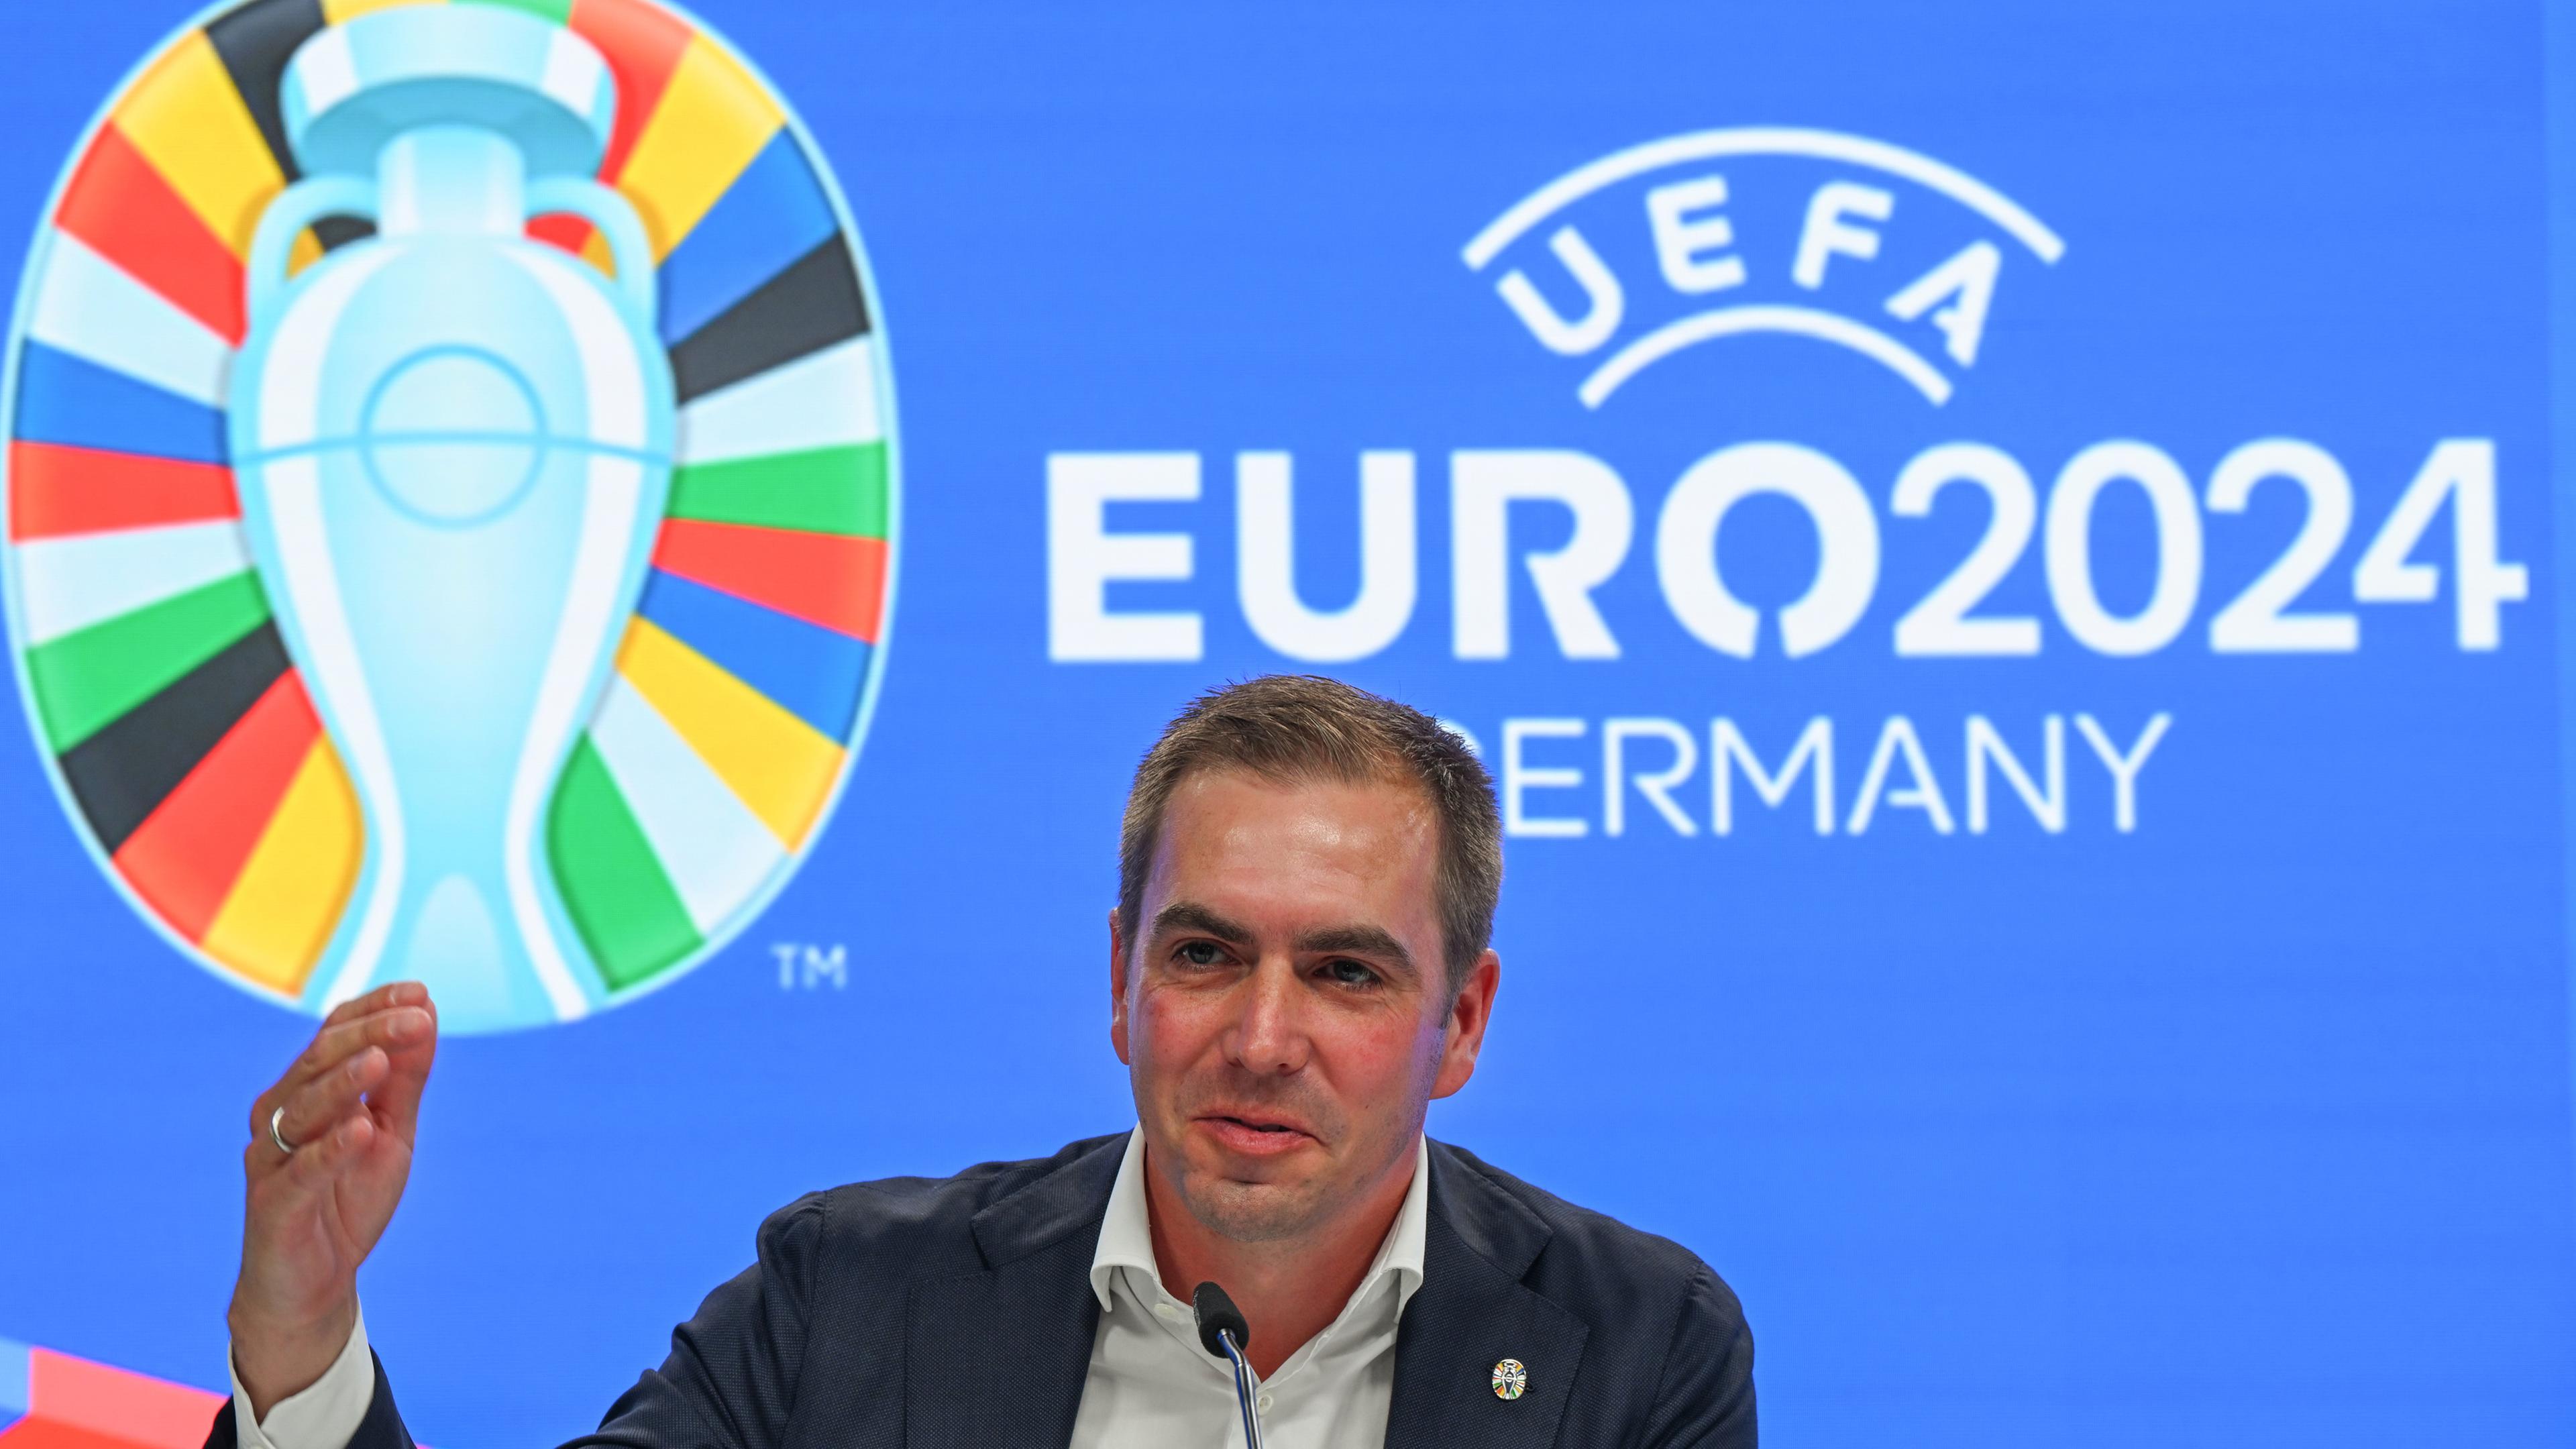 Philipp Lahm, Turnierdirektor der UEFA EURO 2024, spricht während einer Pressekonferenz zur EM 2024 im Frankfurter Stadion.